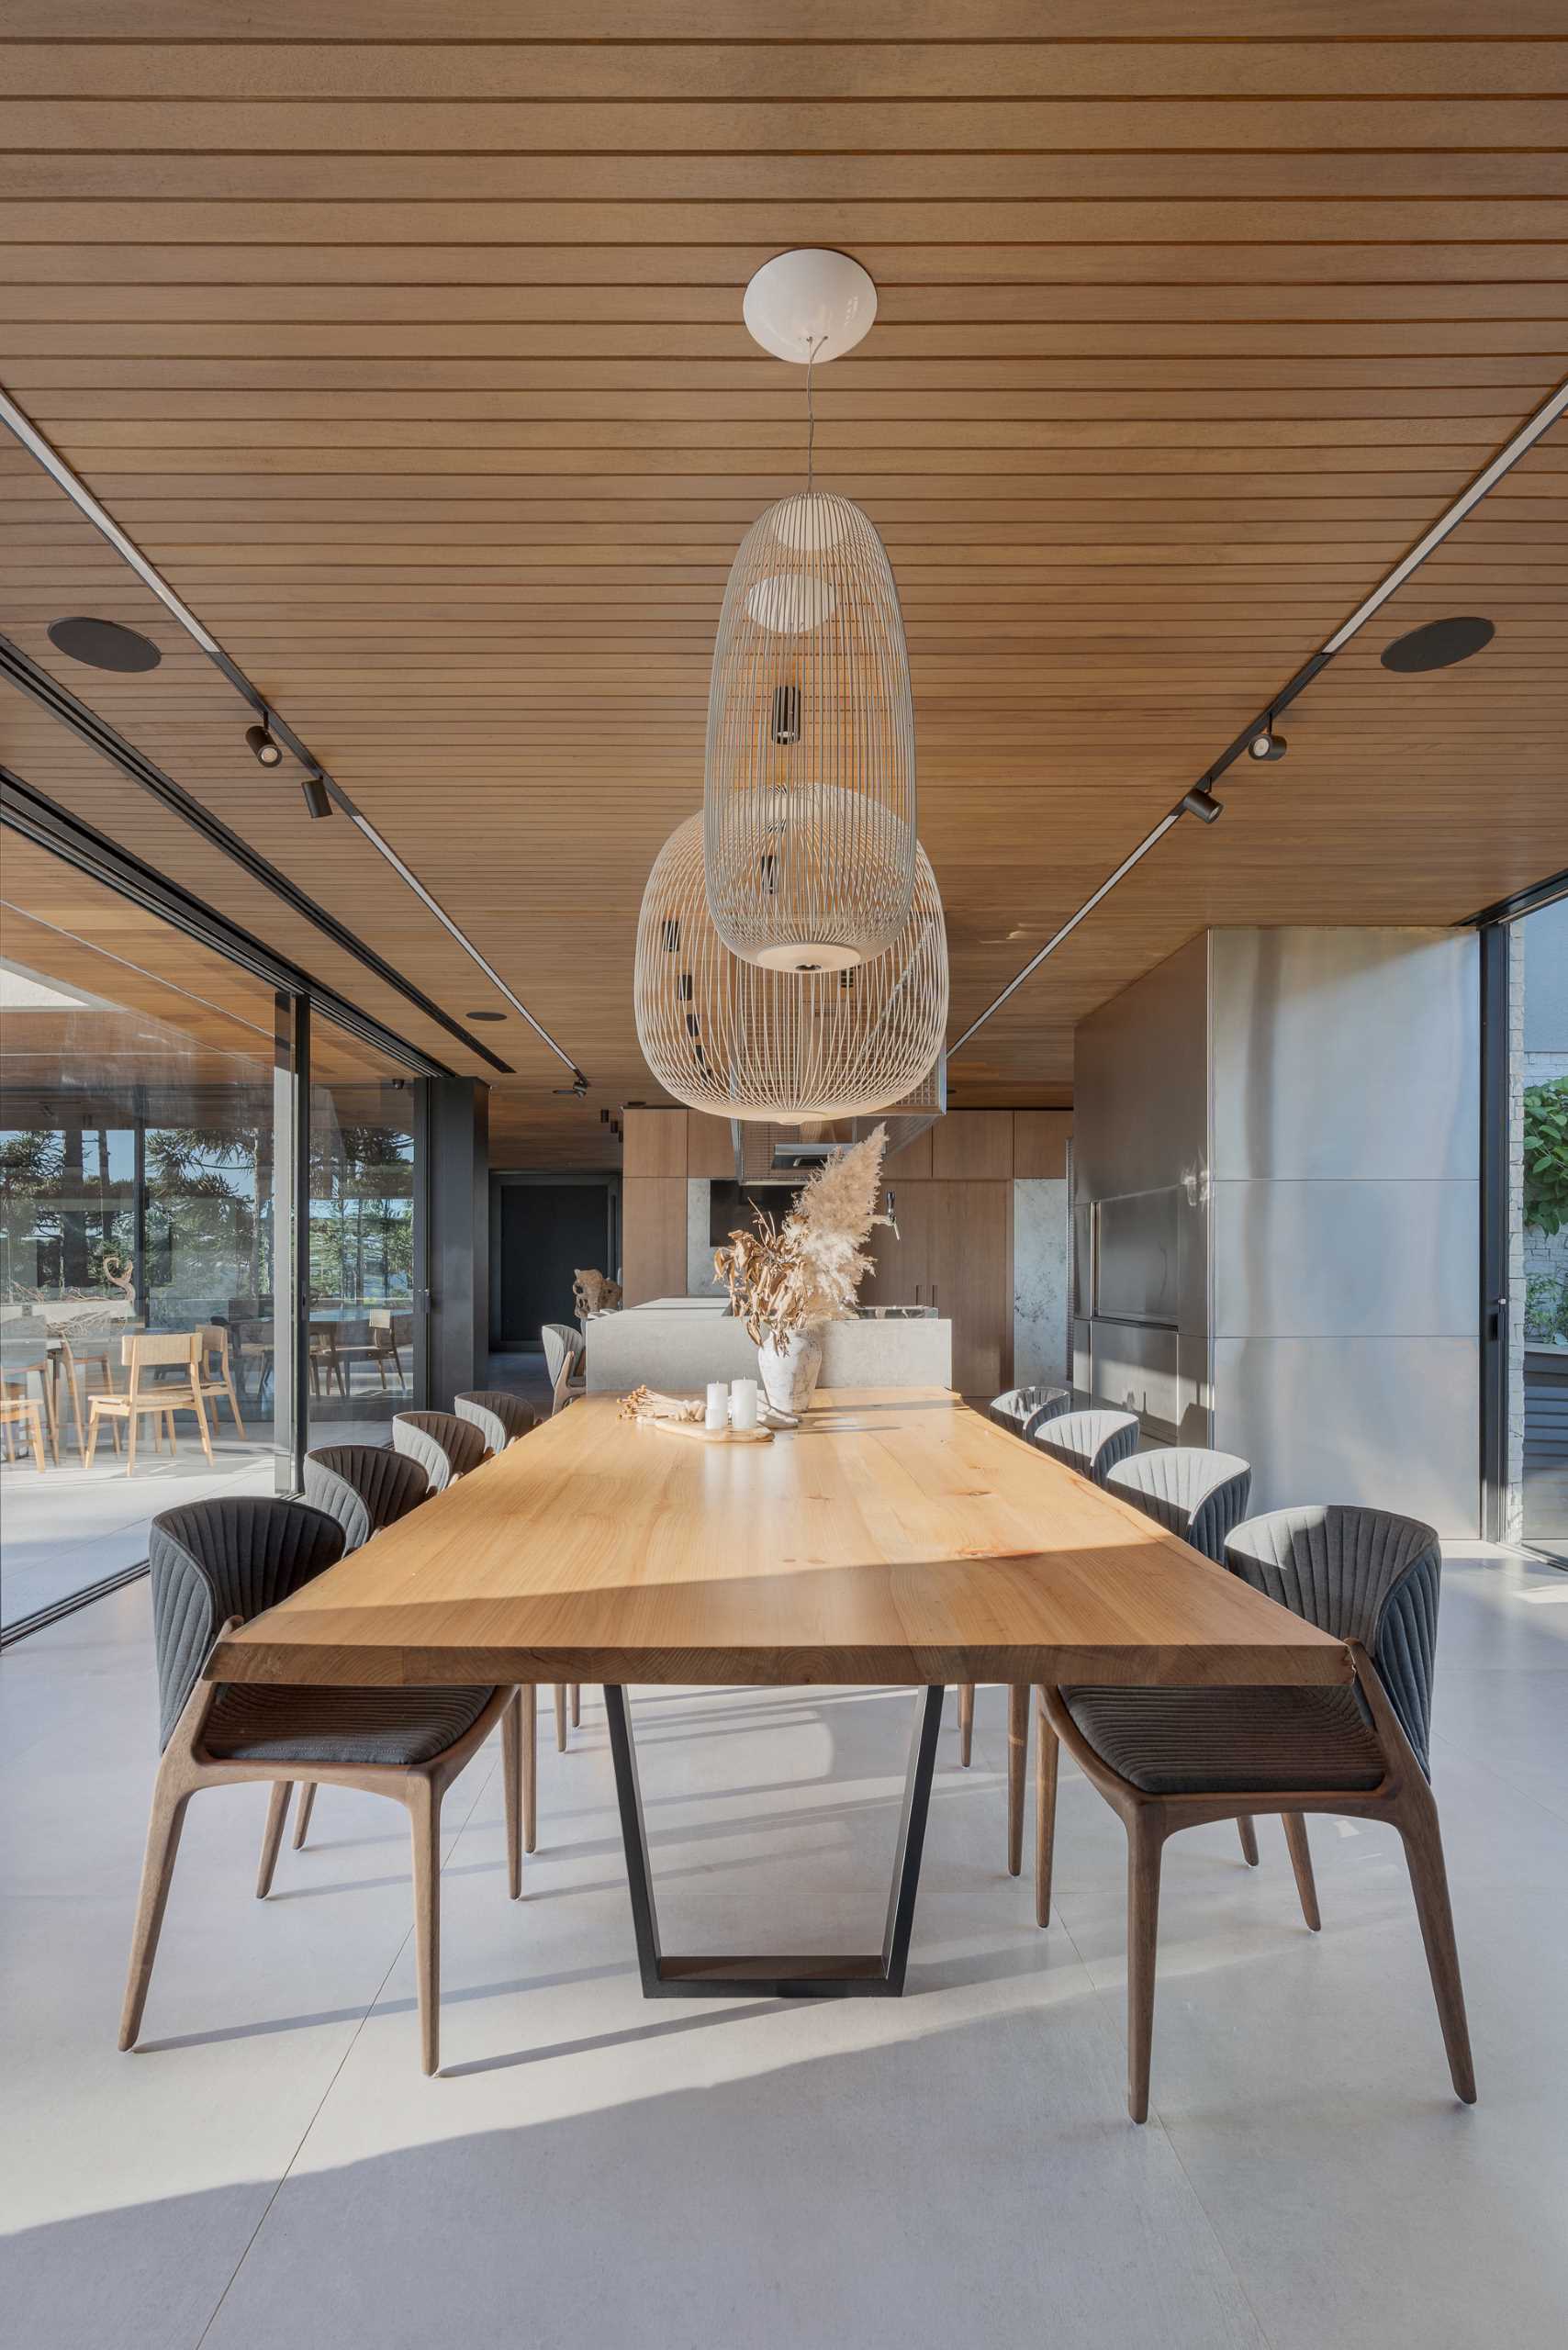 یک ناهارخوری مدرن با یک میز چوبی بلند که به جزیره آشپزخانه متصل است.  صندلی های خا،تری تیره یک ،صر متضاد را ارائه می دهند، در حالی که دیوار انتهای میز به یک جفت انبار شراب محصور شده شیشه ای اختصاص داده شده است.